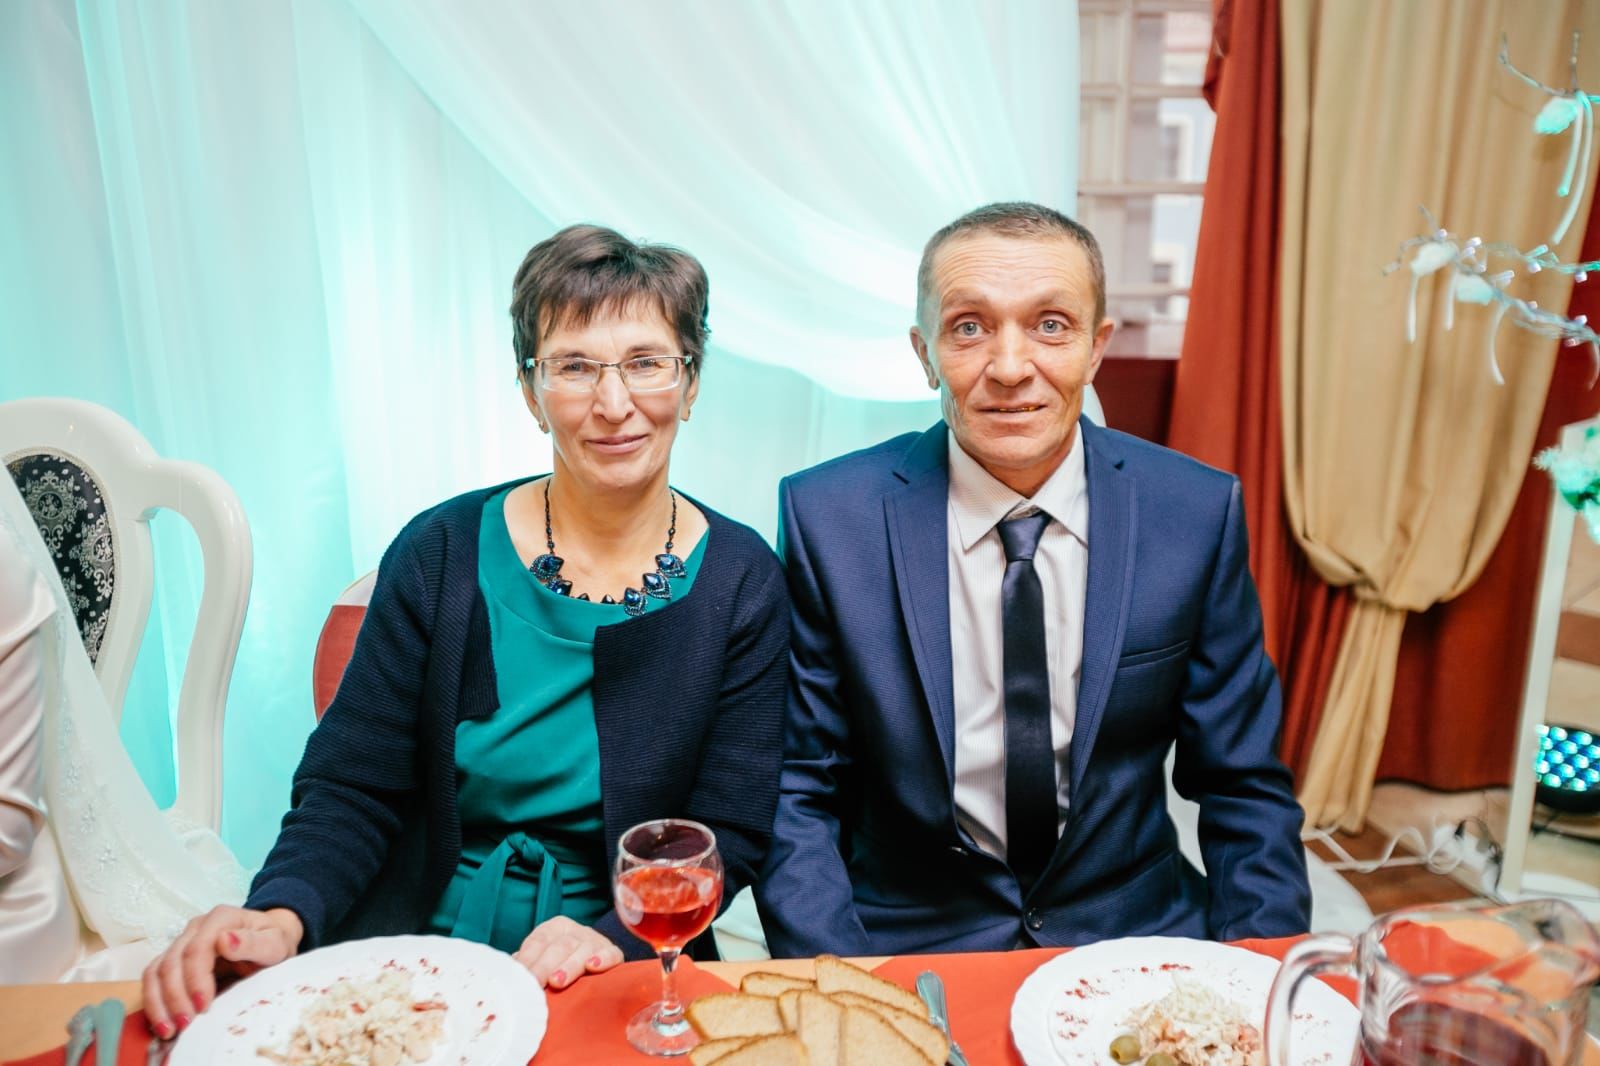 5 июня нашему дорогому отцу Галяутдинову Ильшату, проживающему в селе Новый Баллыкуль, исполняется 55 лет